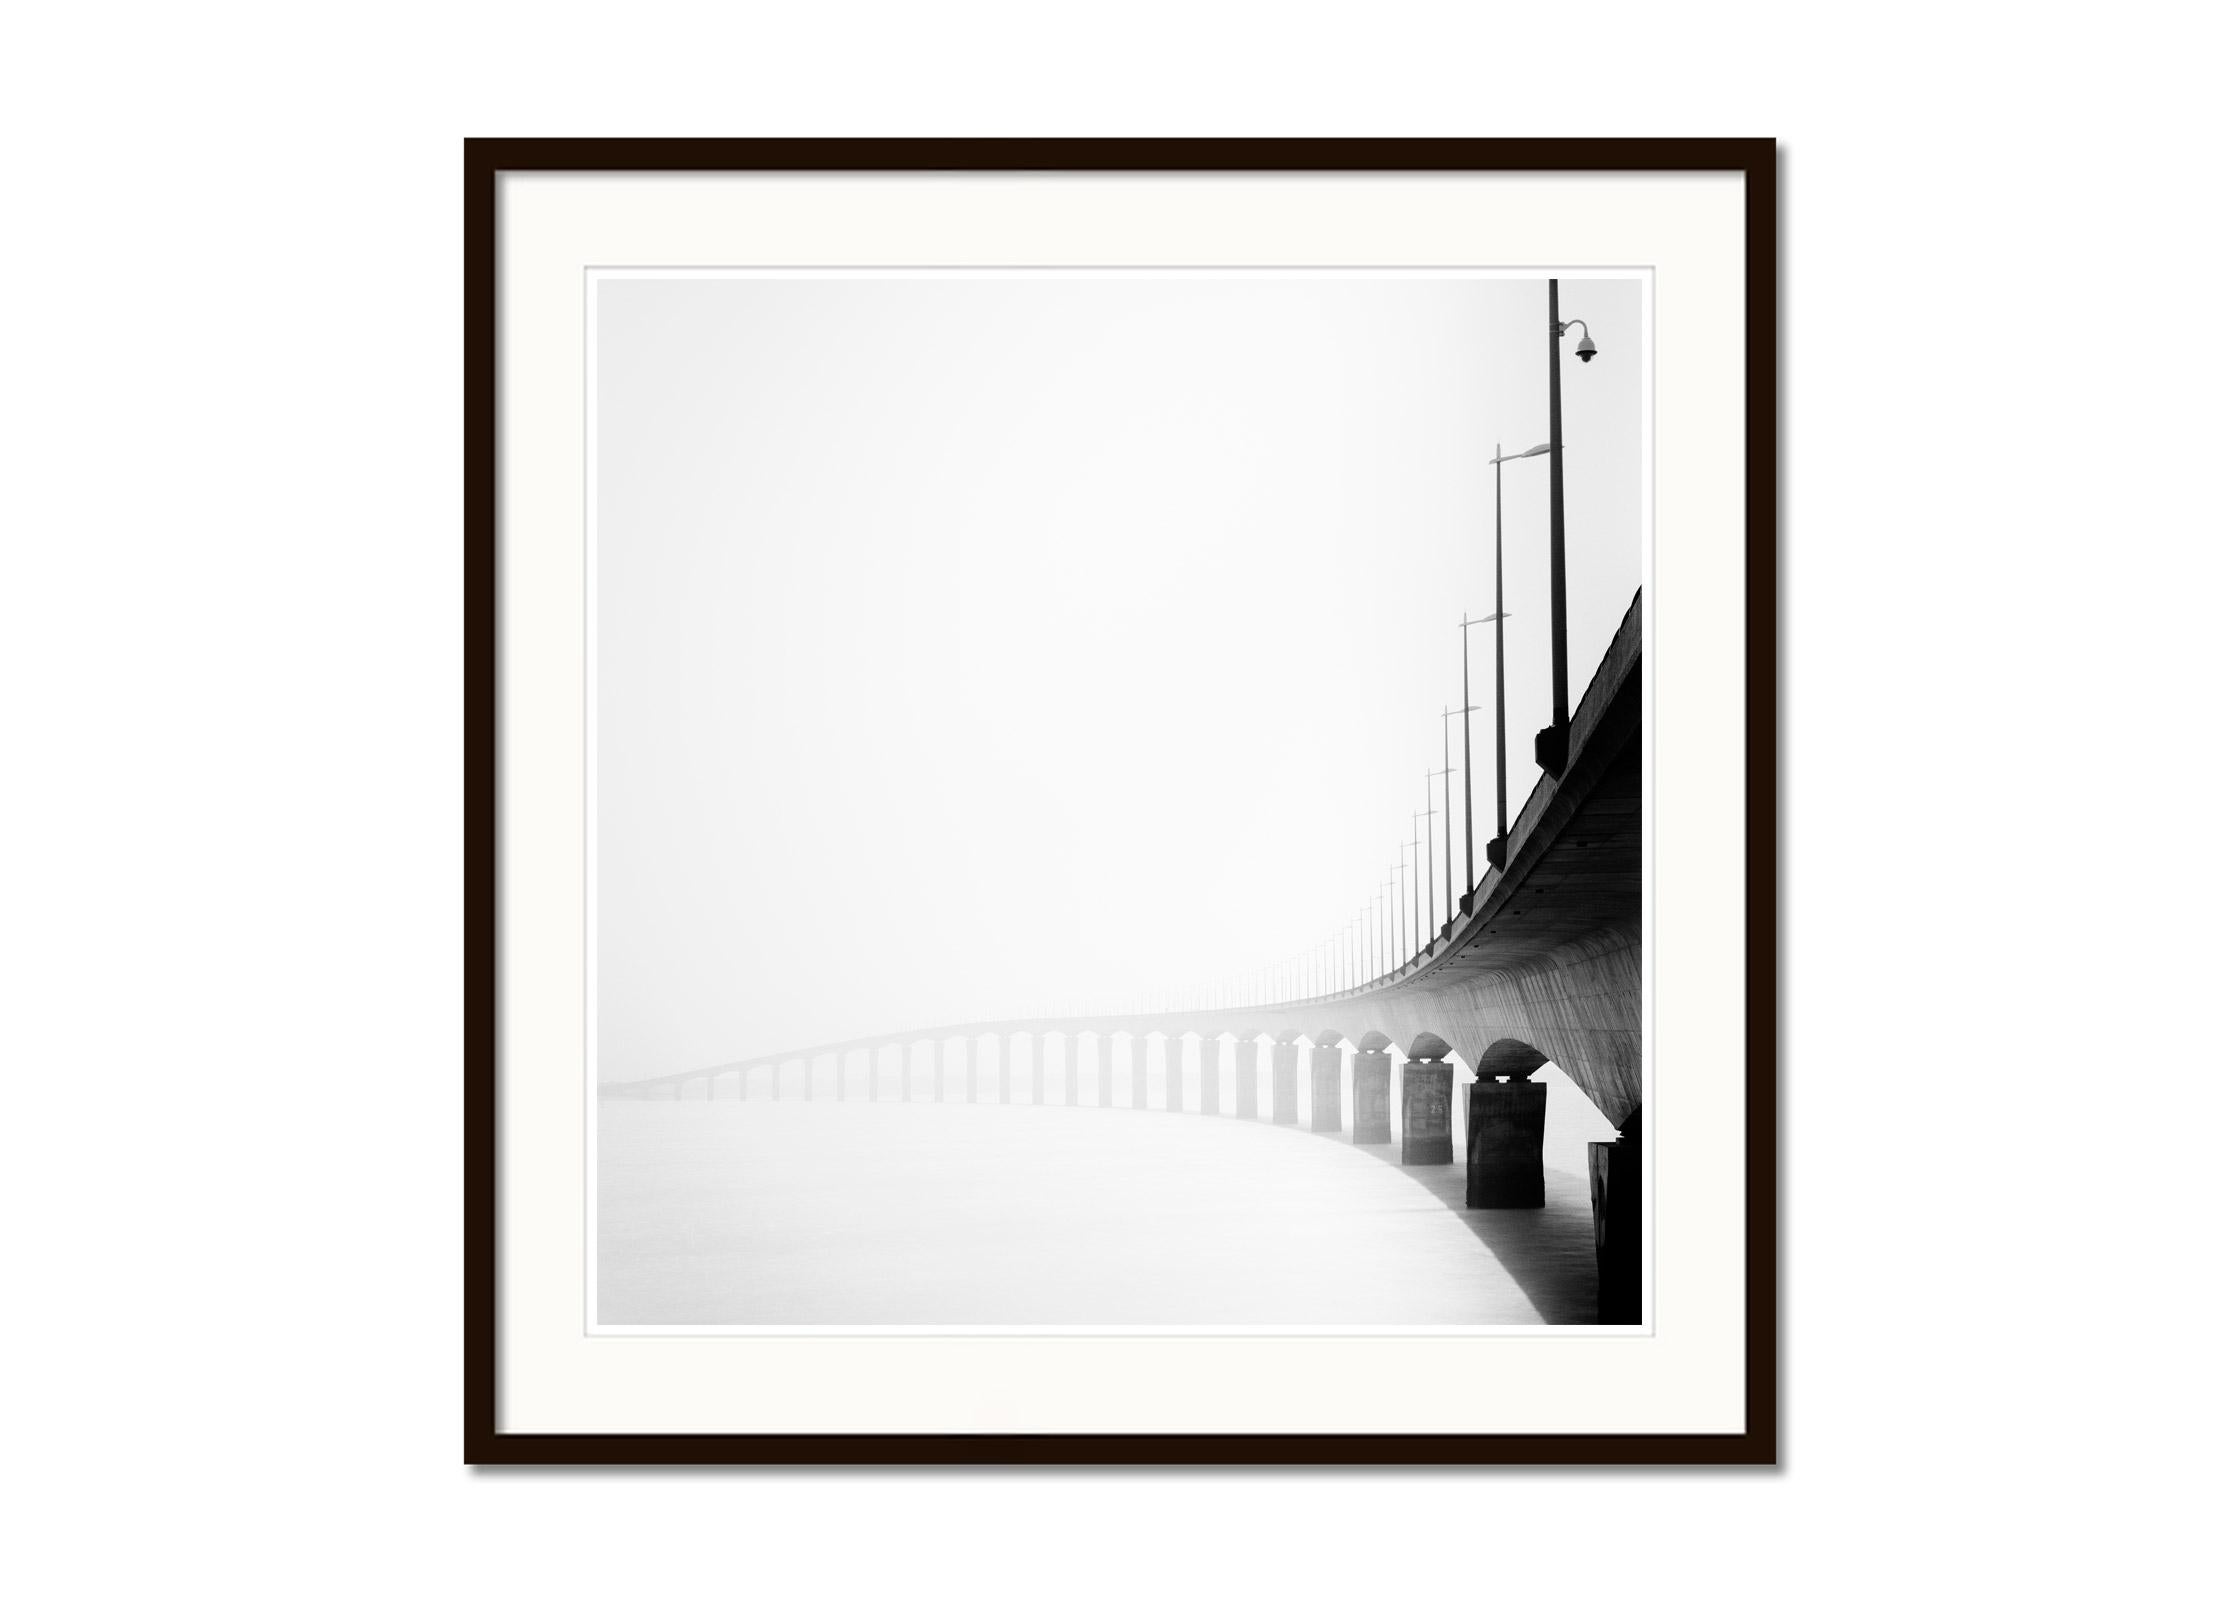 Pont de Pont Ile de Re Bridge, black and white photography, fine art landscape - Gray Landscape Photograph by Gerald Berghammer